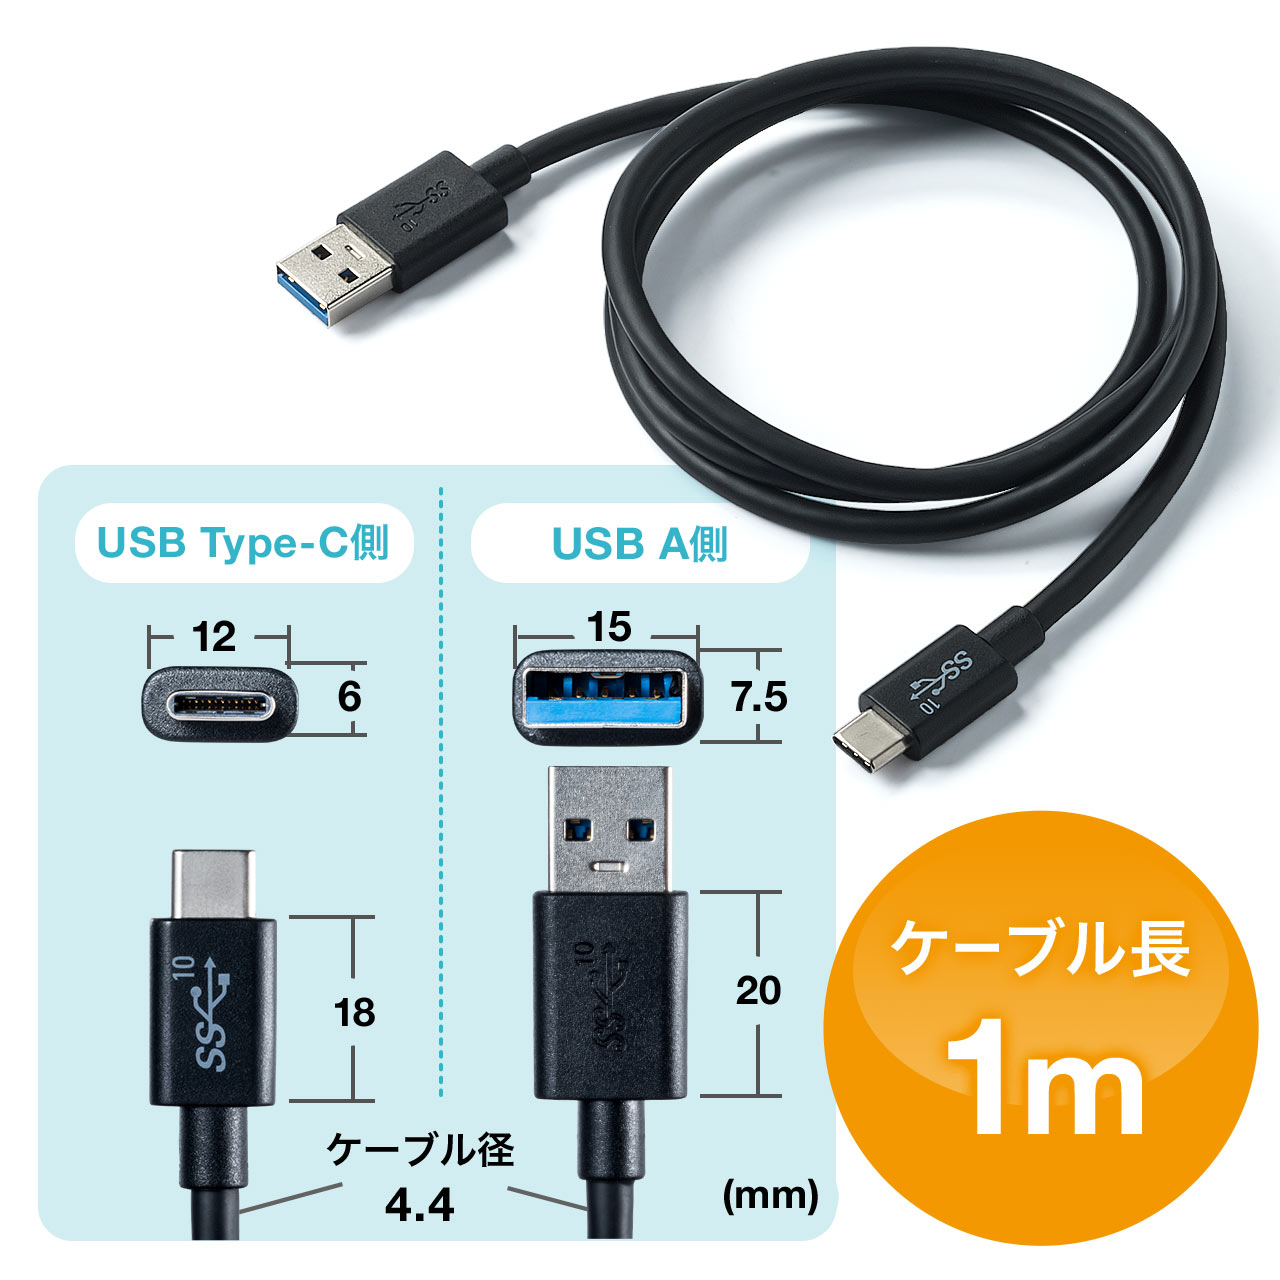 USB Type-Cケーブル 1m USB3.1 Gen2 USB A-Cコネクタ USB-IF認証品 ブラック 500-USB053-1